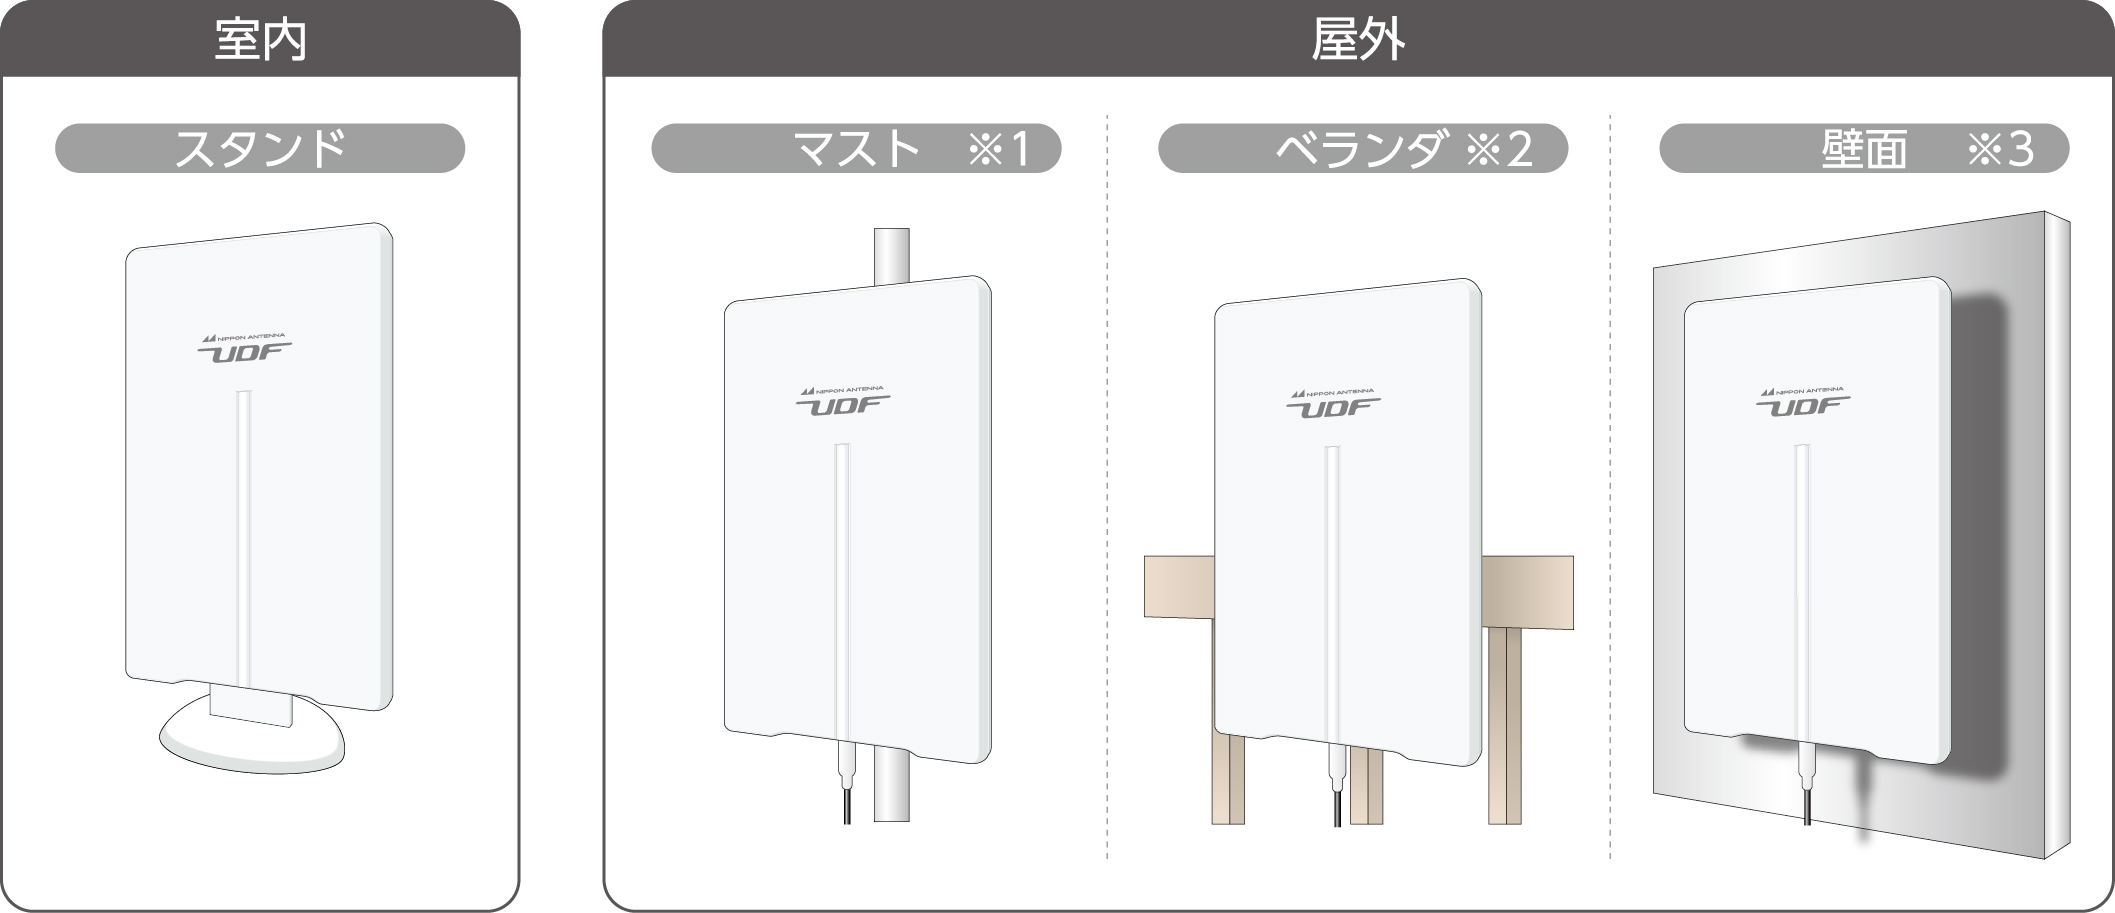 薄型UHFアンテナ(ブースター内蔵) UDF85B: テレビ受信用機器 | 日本 